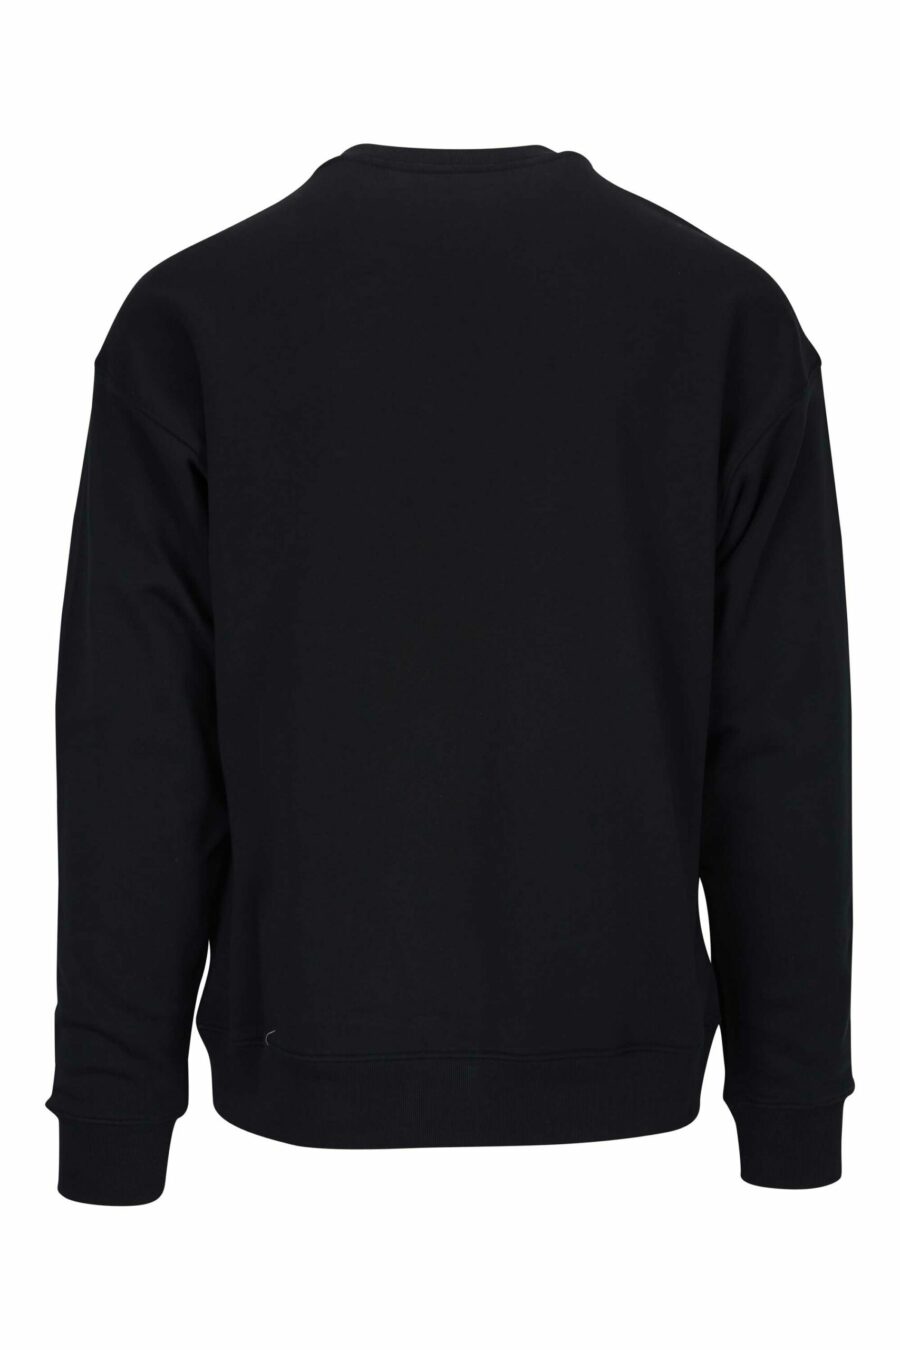 Schwarzes Sweatshirt mit einfarbig gepunktetem Bären-Maxilogo - 667113458274 1 skaliert